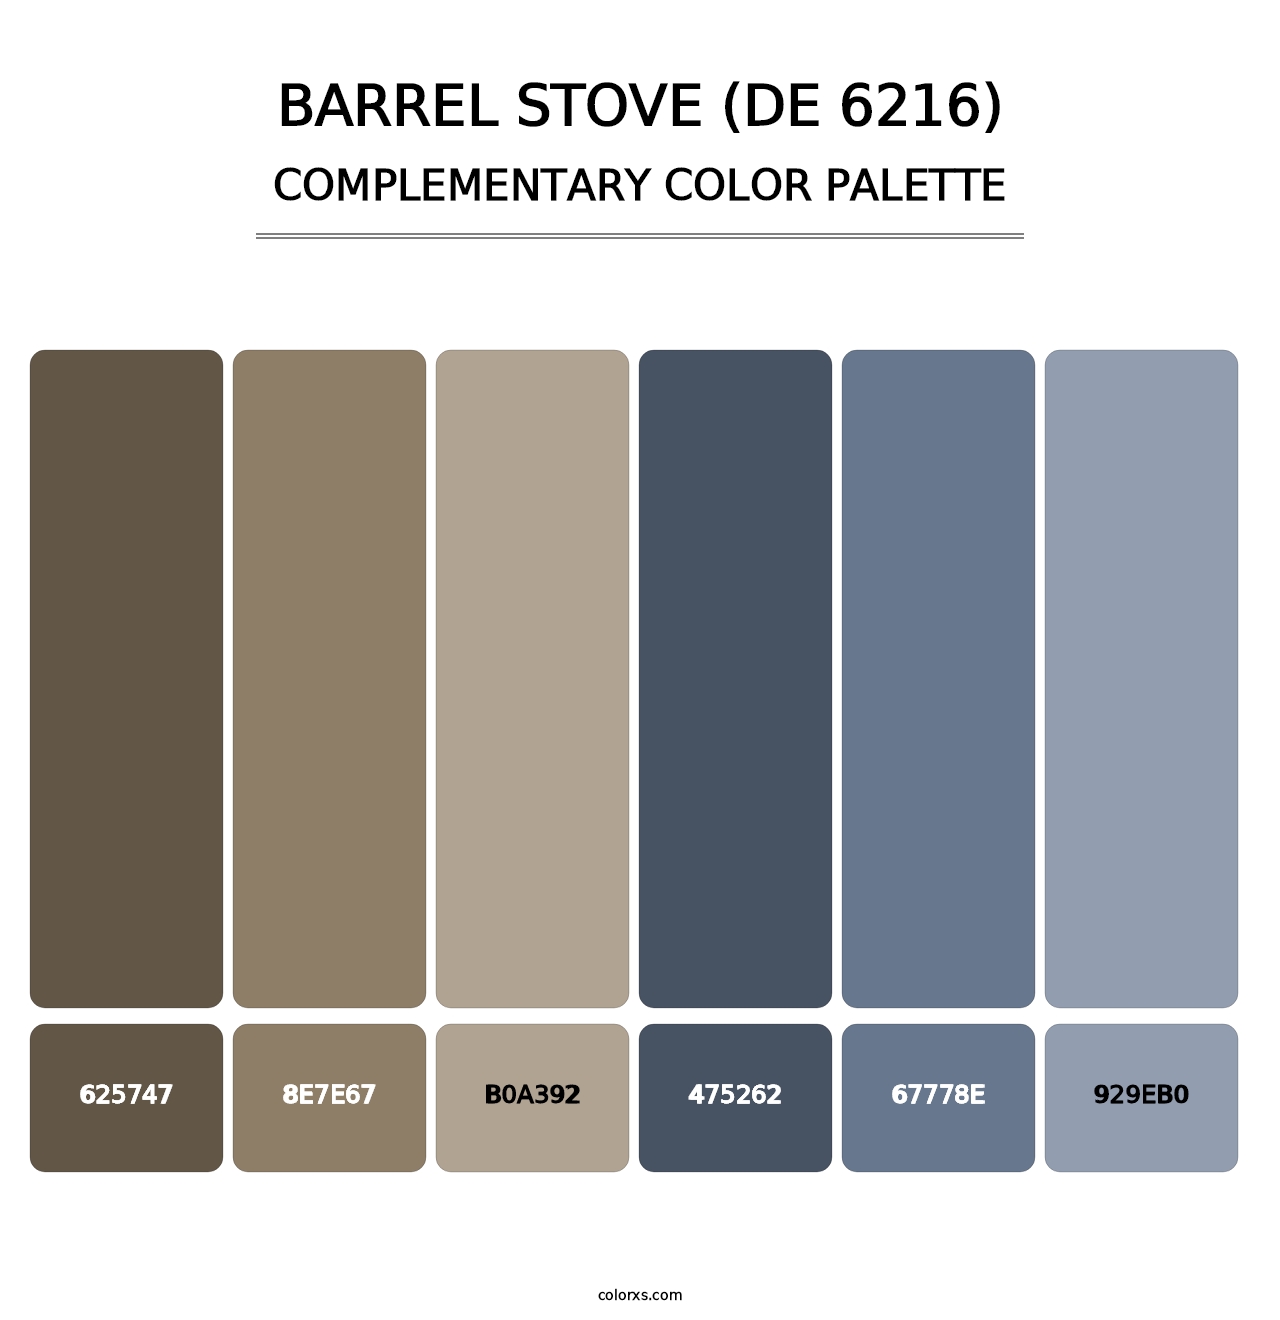 Barrel Stove (DE 6216) - Complementary Color Palette